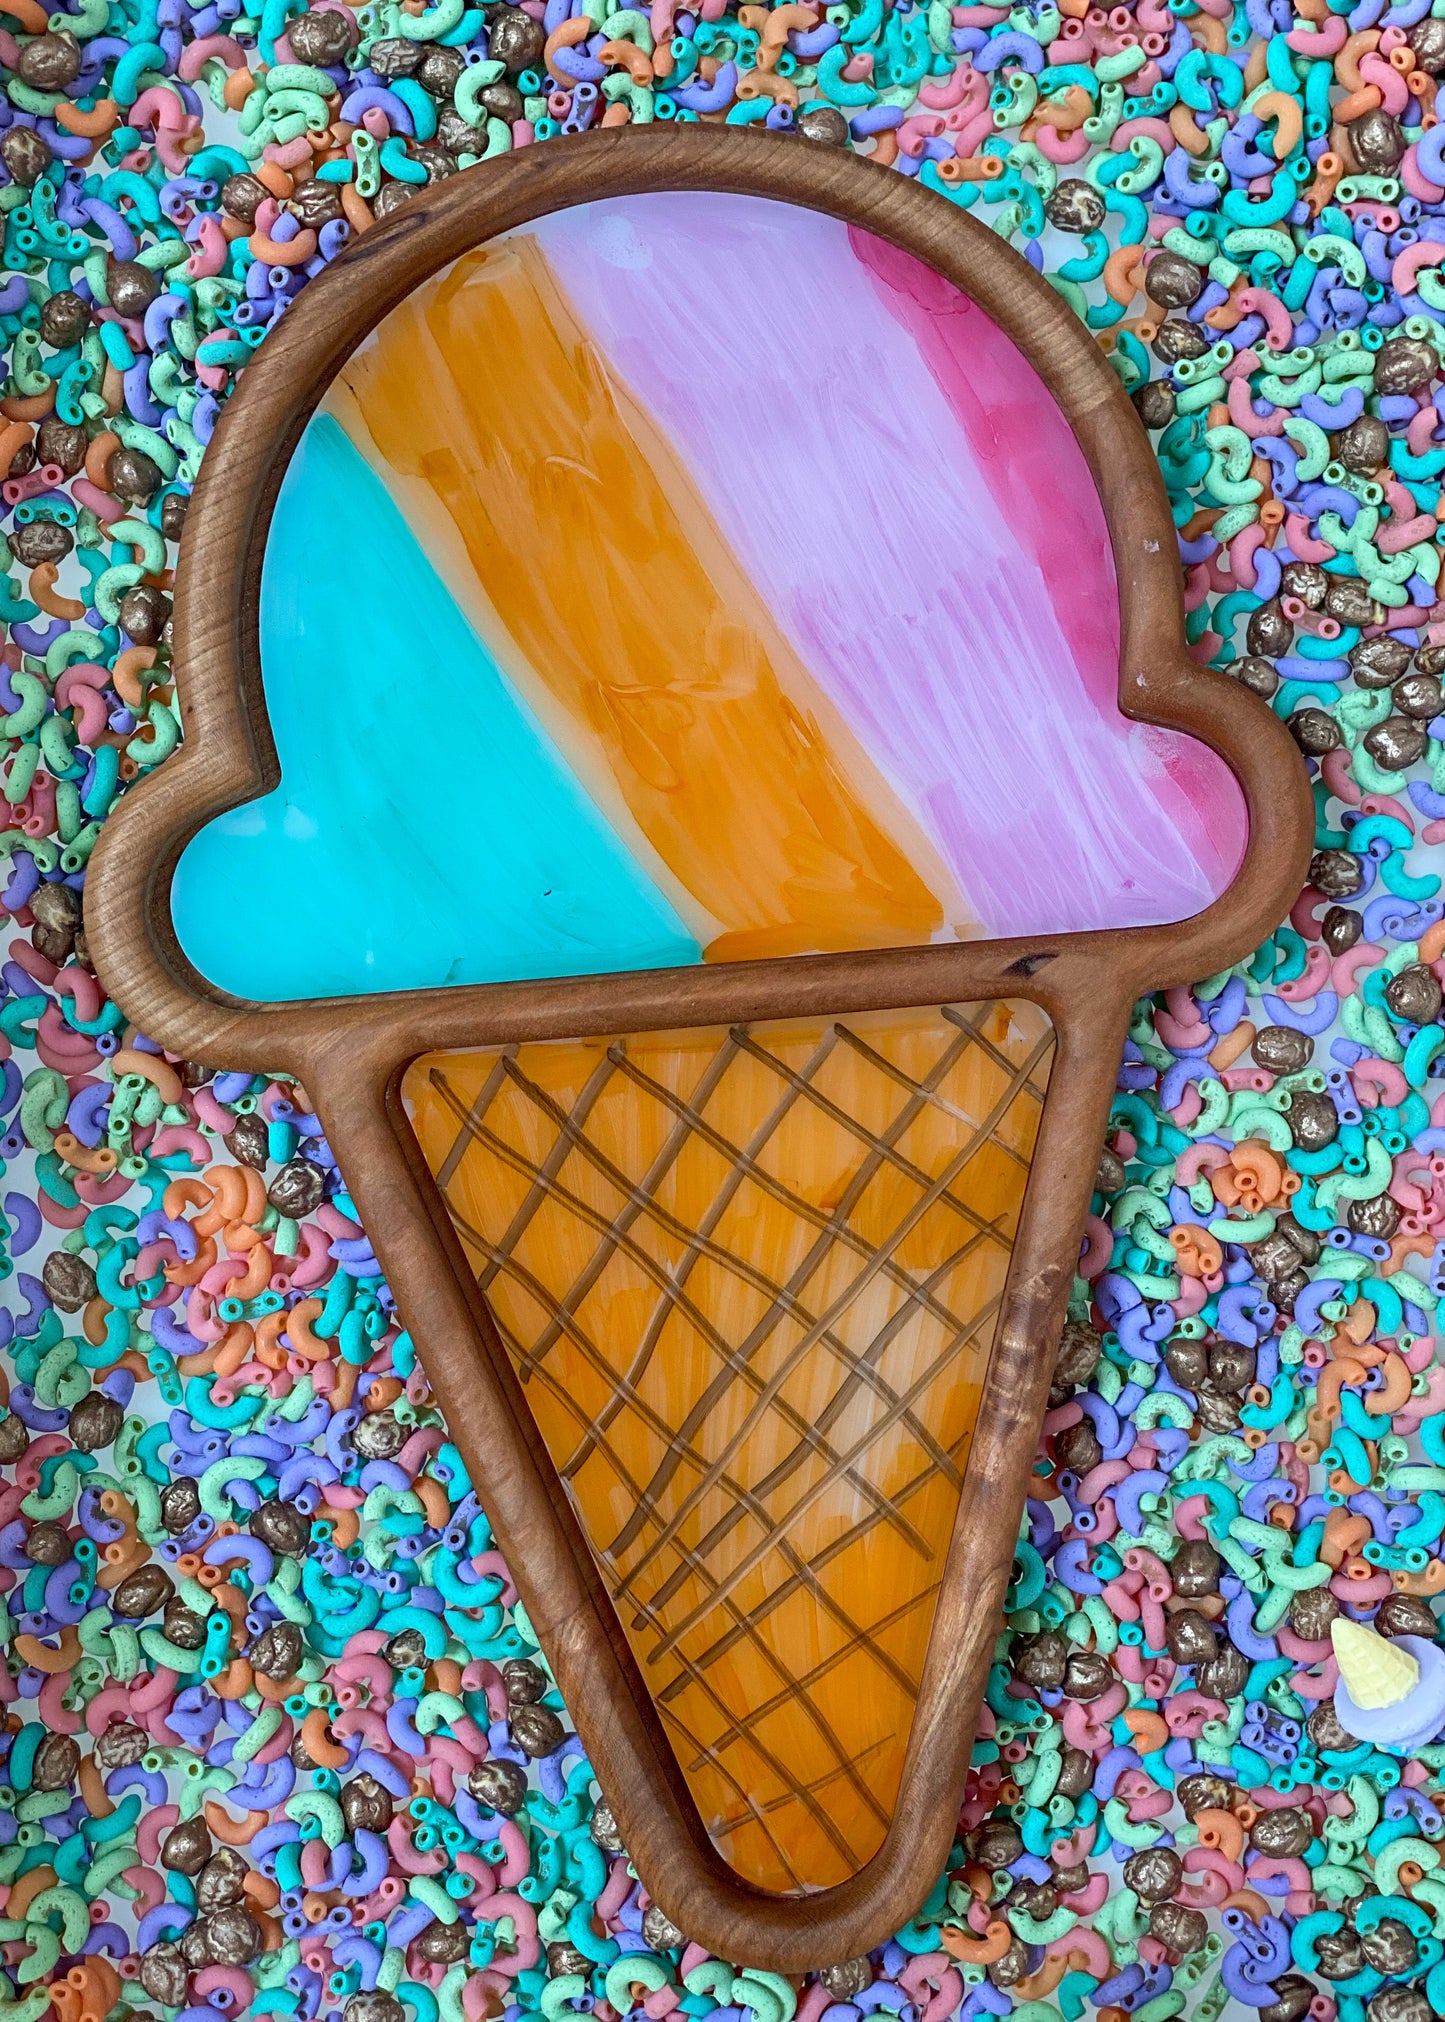 Ice Cream Cone Imaginative Play Tray